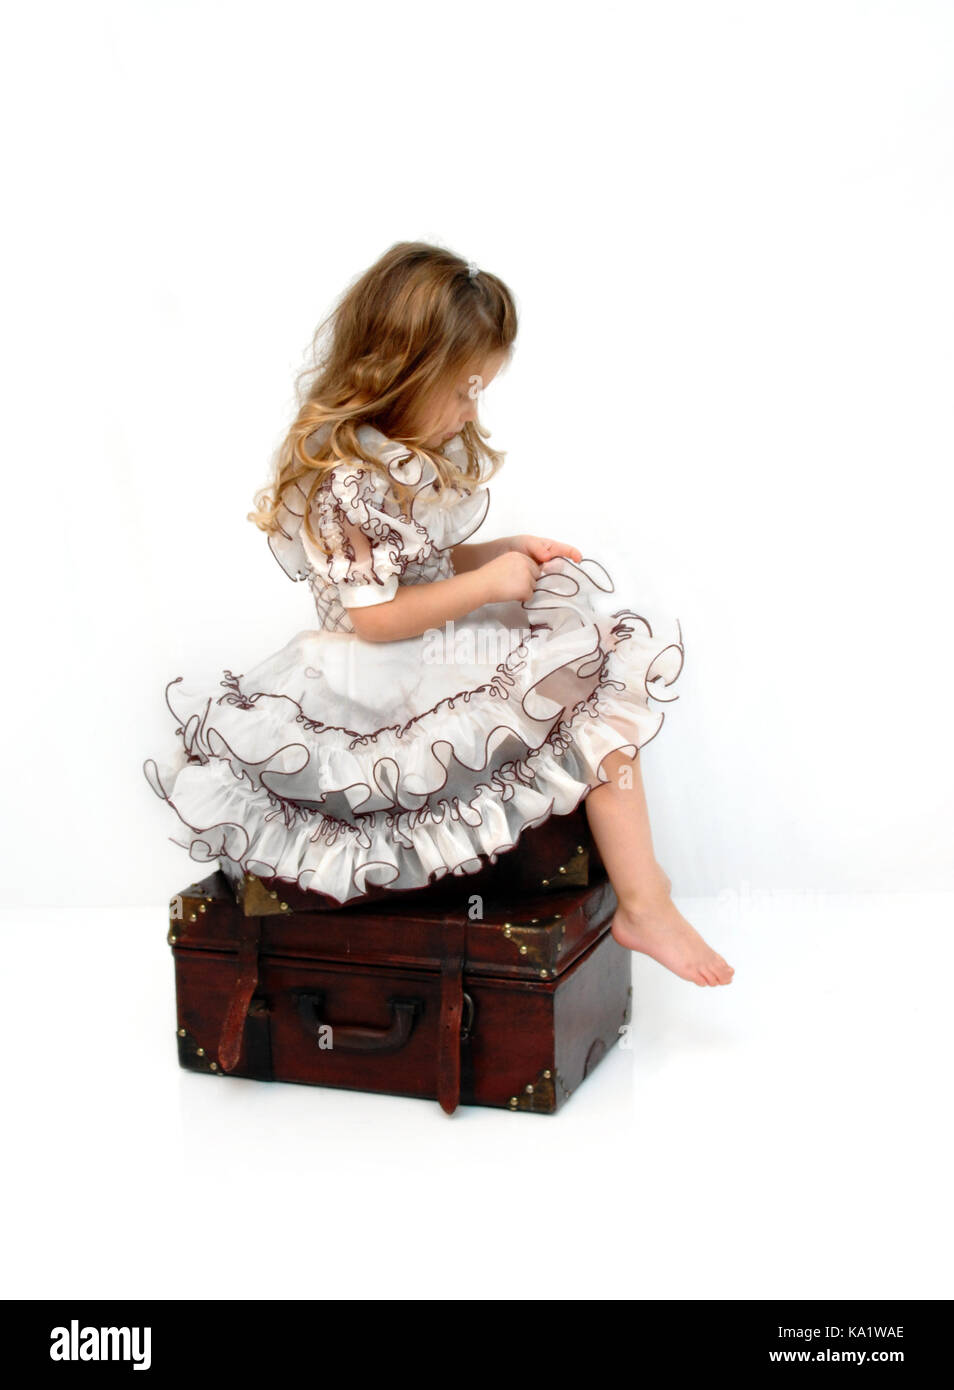 Splendida bambina si siede su una pila di valigie in legno. indossa un abito pagent e guardando verso il basso perso nel pensiero. Foto Stock